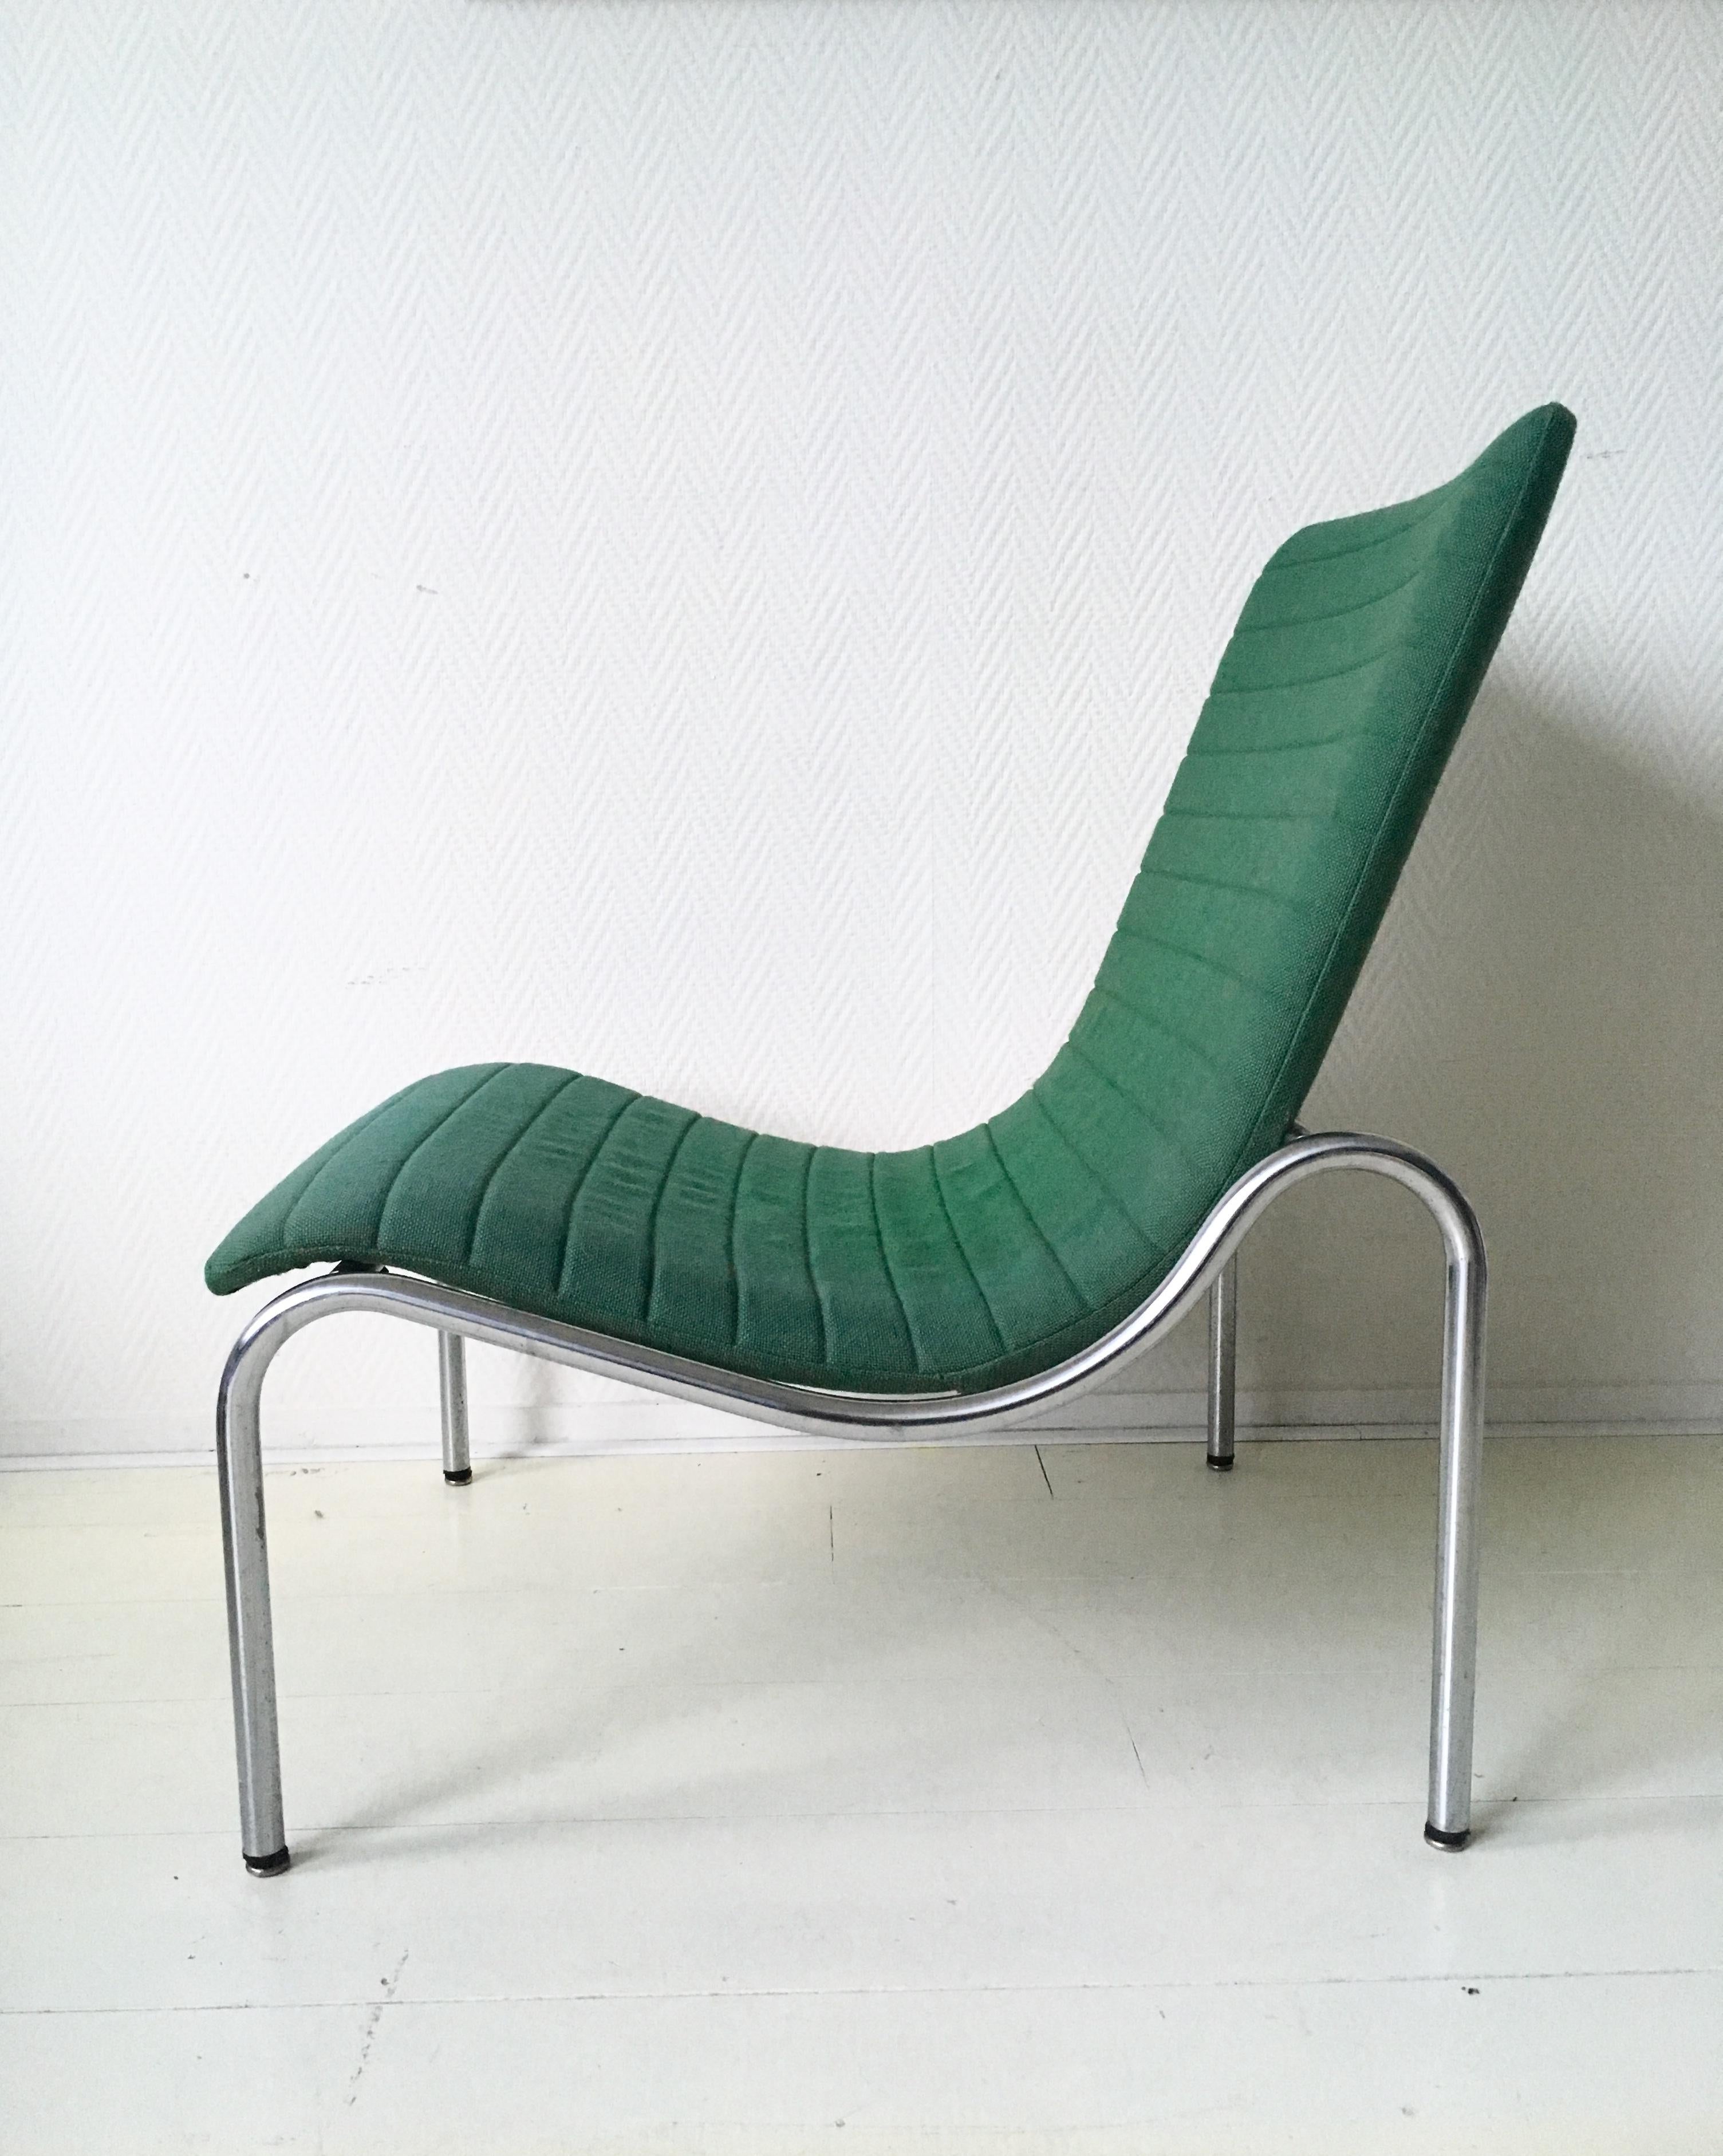 Dieser Loungesessel wurde 1968 von Kho Liang Ie für Stabin Holland entworfen. Er hat einen Rohrsockel mit grüner Polsterung. Das Stück befindet sich in einem guten Zustand. JETZT ZEITLICH BEGRENZTEN RABATT PROMO-CODE ZUR VERFÜGUNG, SENDEN SIE